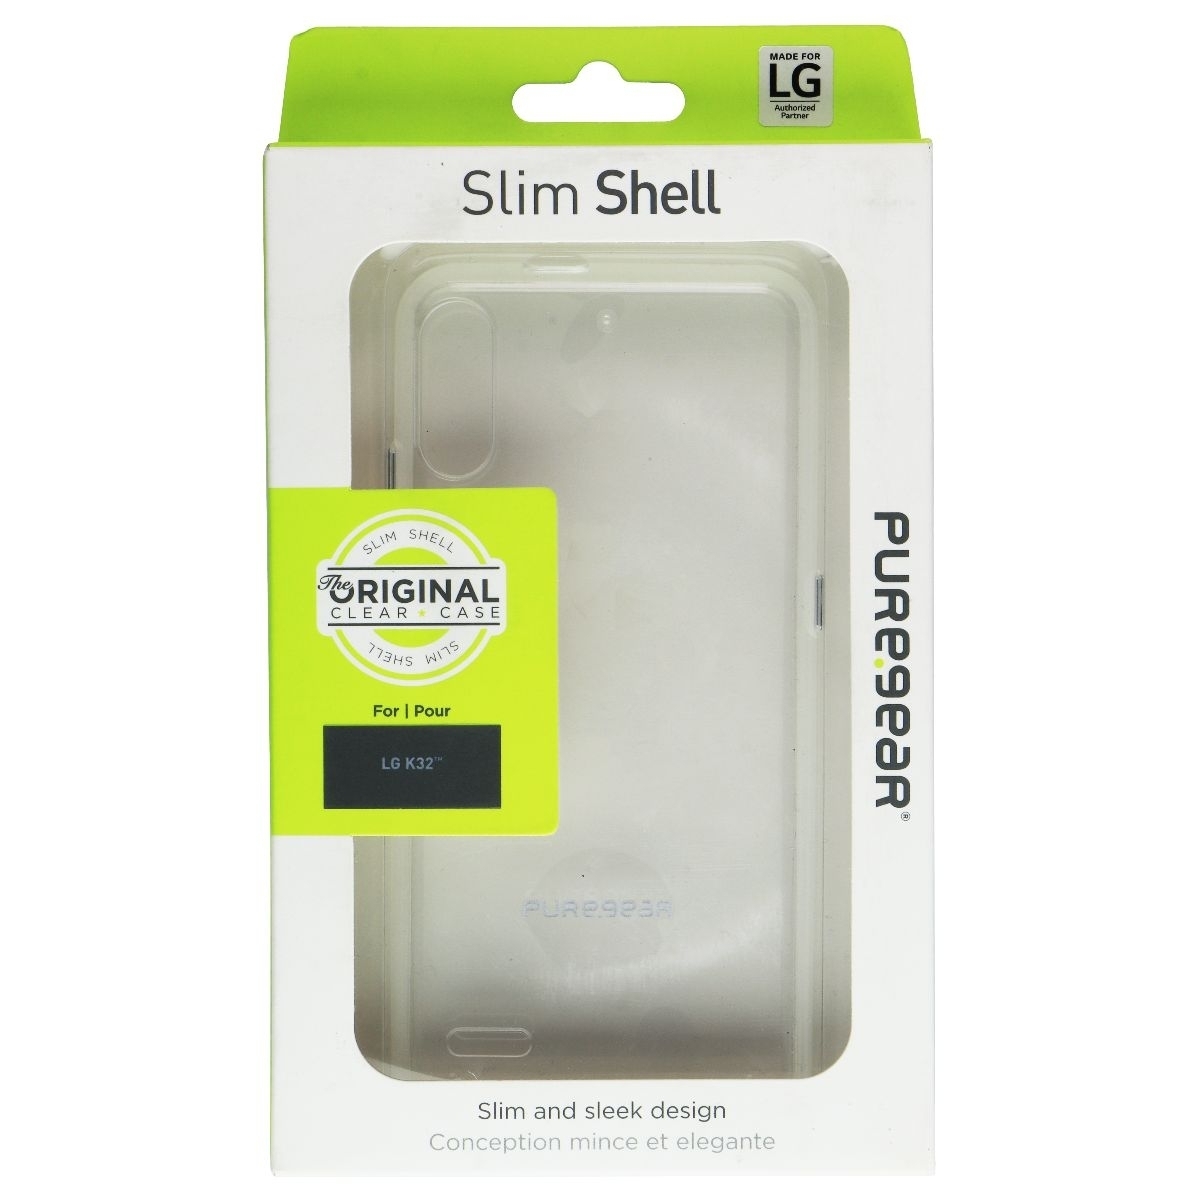 PureGear Slim Shell Hard Case For LG K32 Smartphones - Clear (Refurbished)